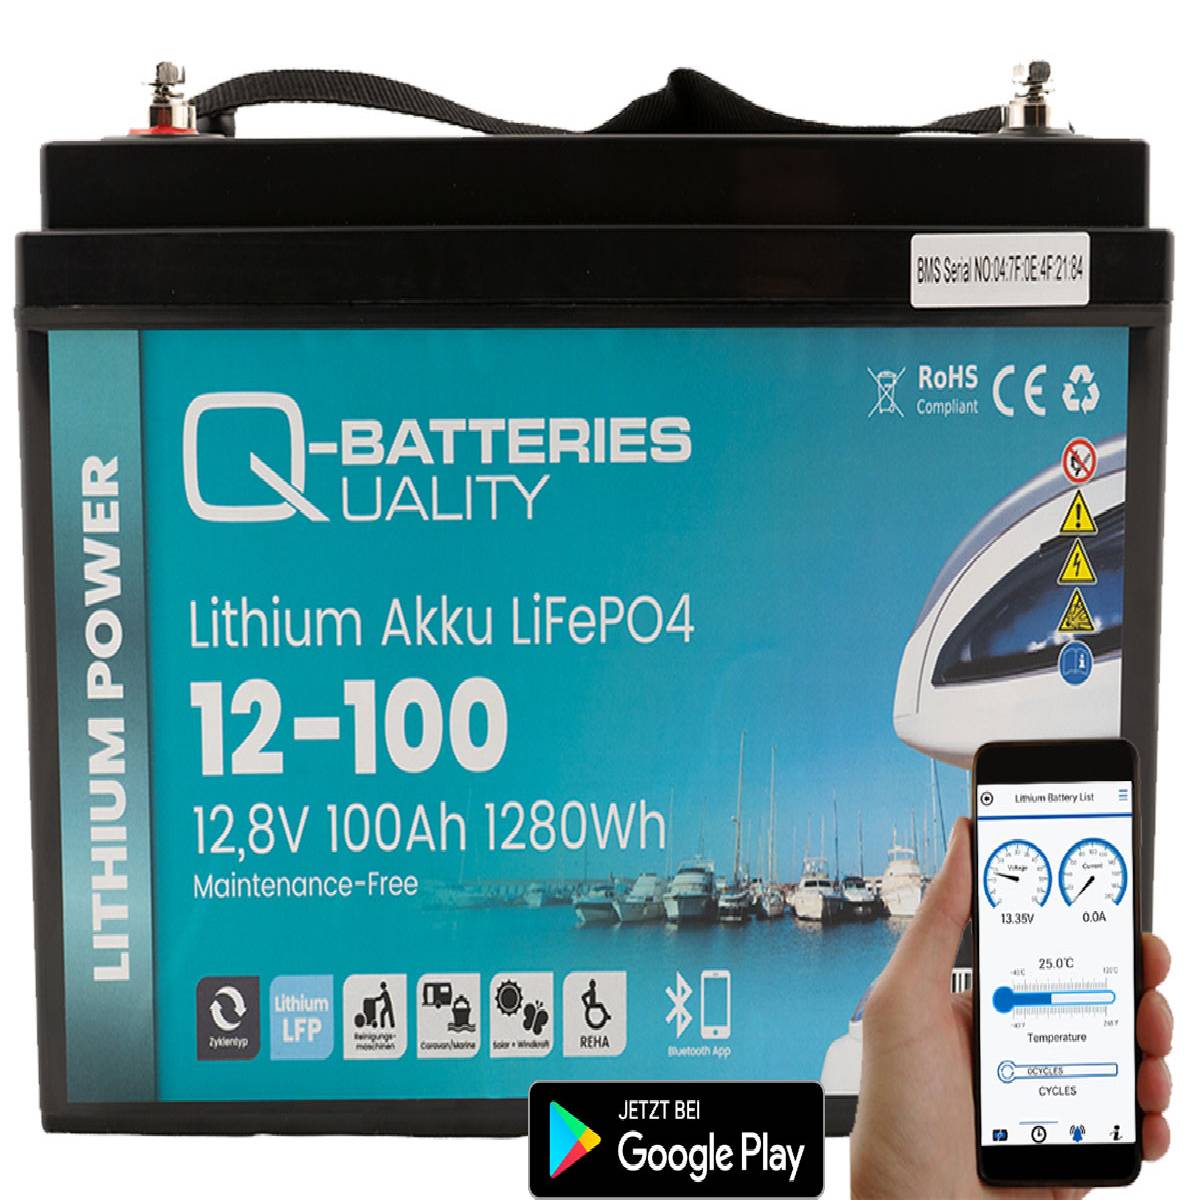 Q-Batteries Lithium Akku 12-100 12,8V 100Ah 1280Wh LiFePO4 Batterie mit Victron Orion Ladegerät